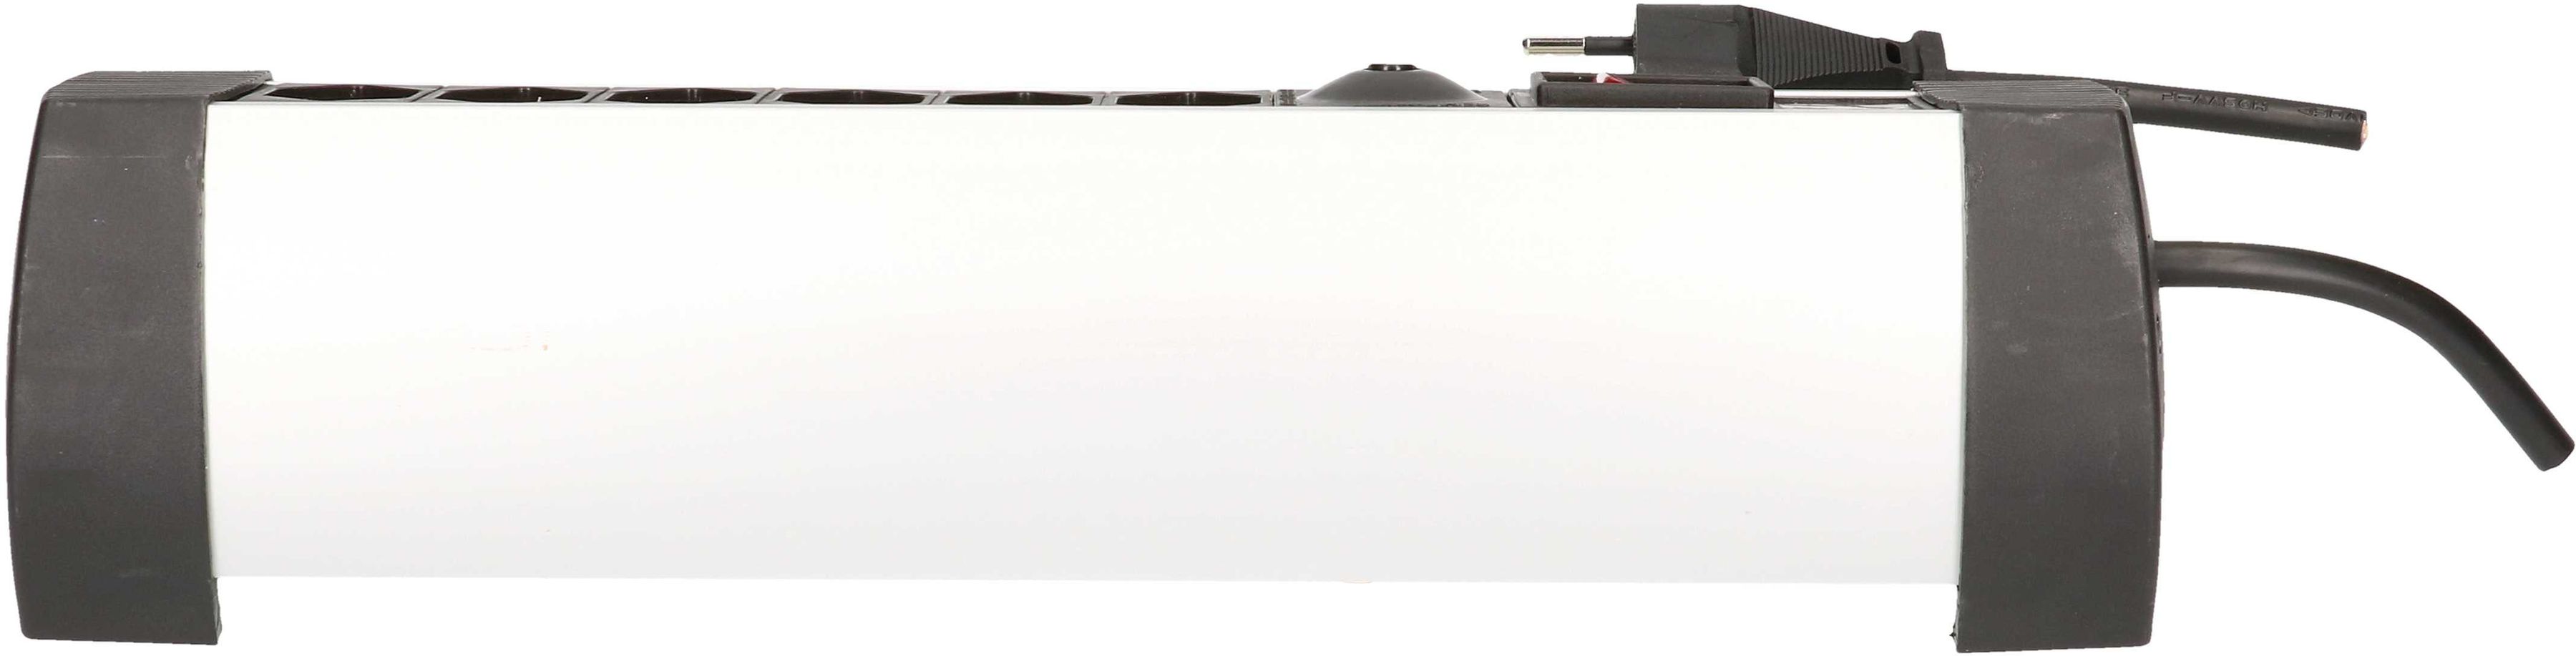 multiprise Prime Line 6x type 13 noir aimant 3m - MAX HAURI AG